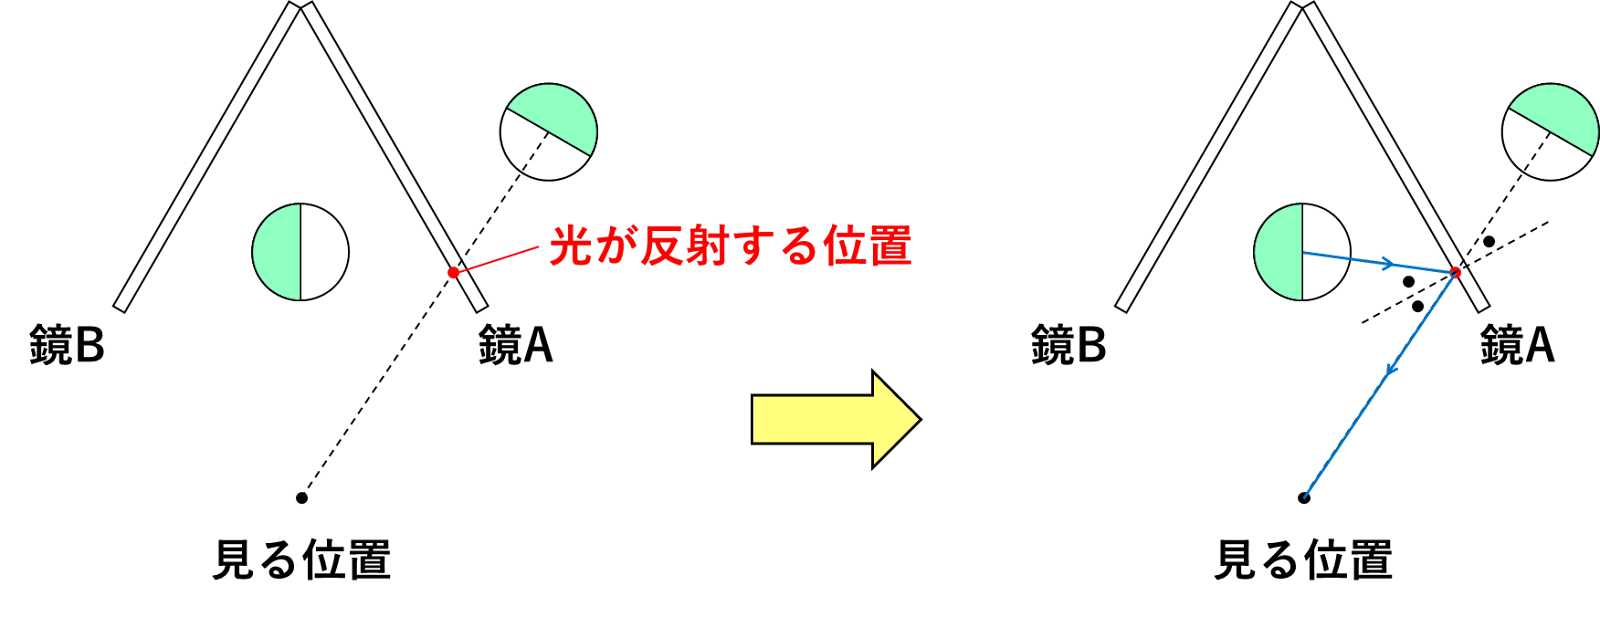 image3 (1)